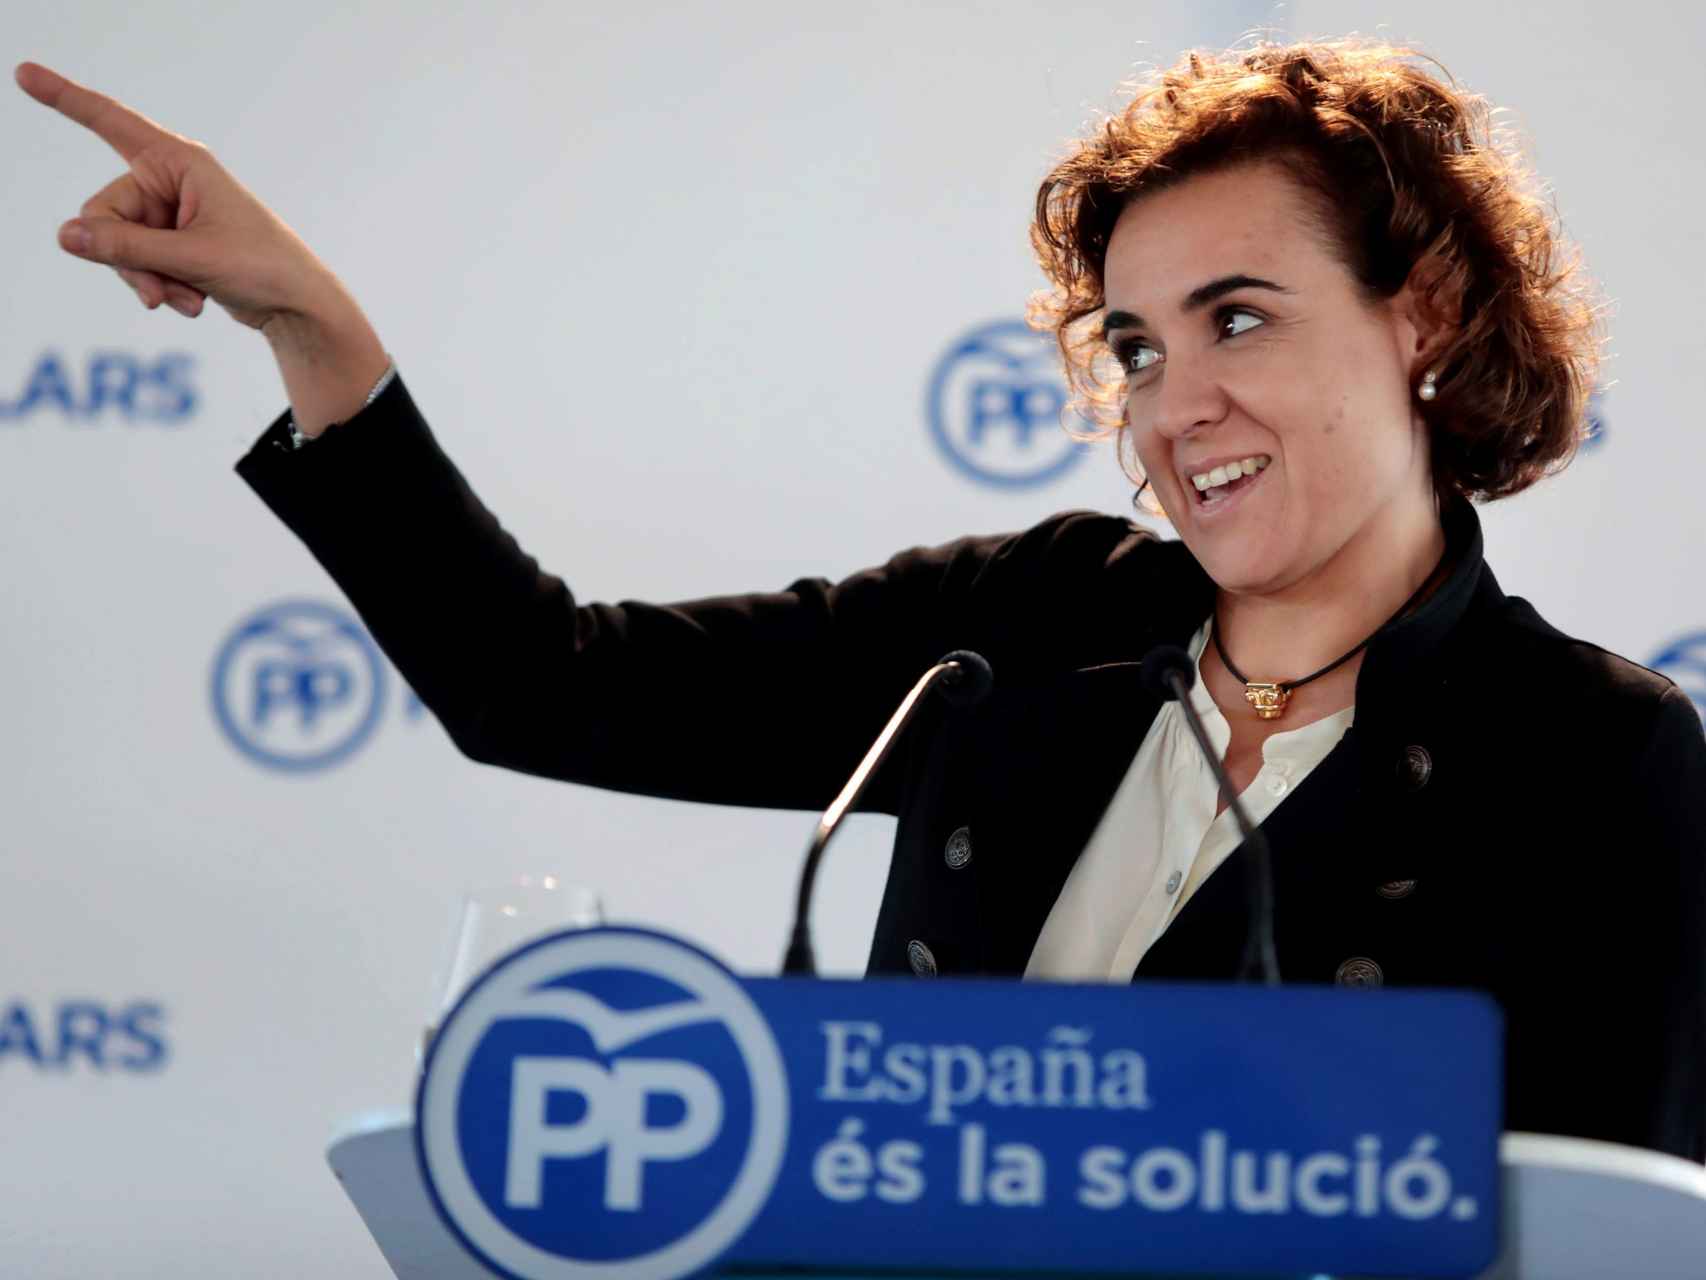 La ministra de Sanidad, Dolors Montserrat, durante su intervención el sábado en una xatonada popular en Cataluña.